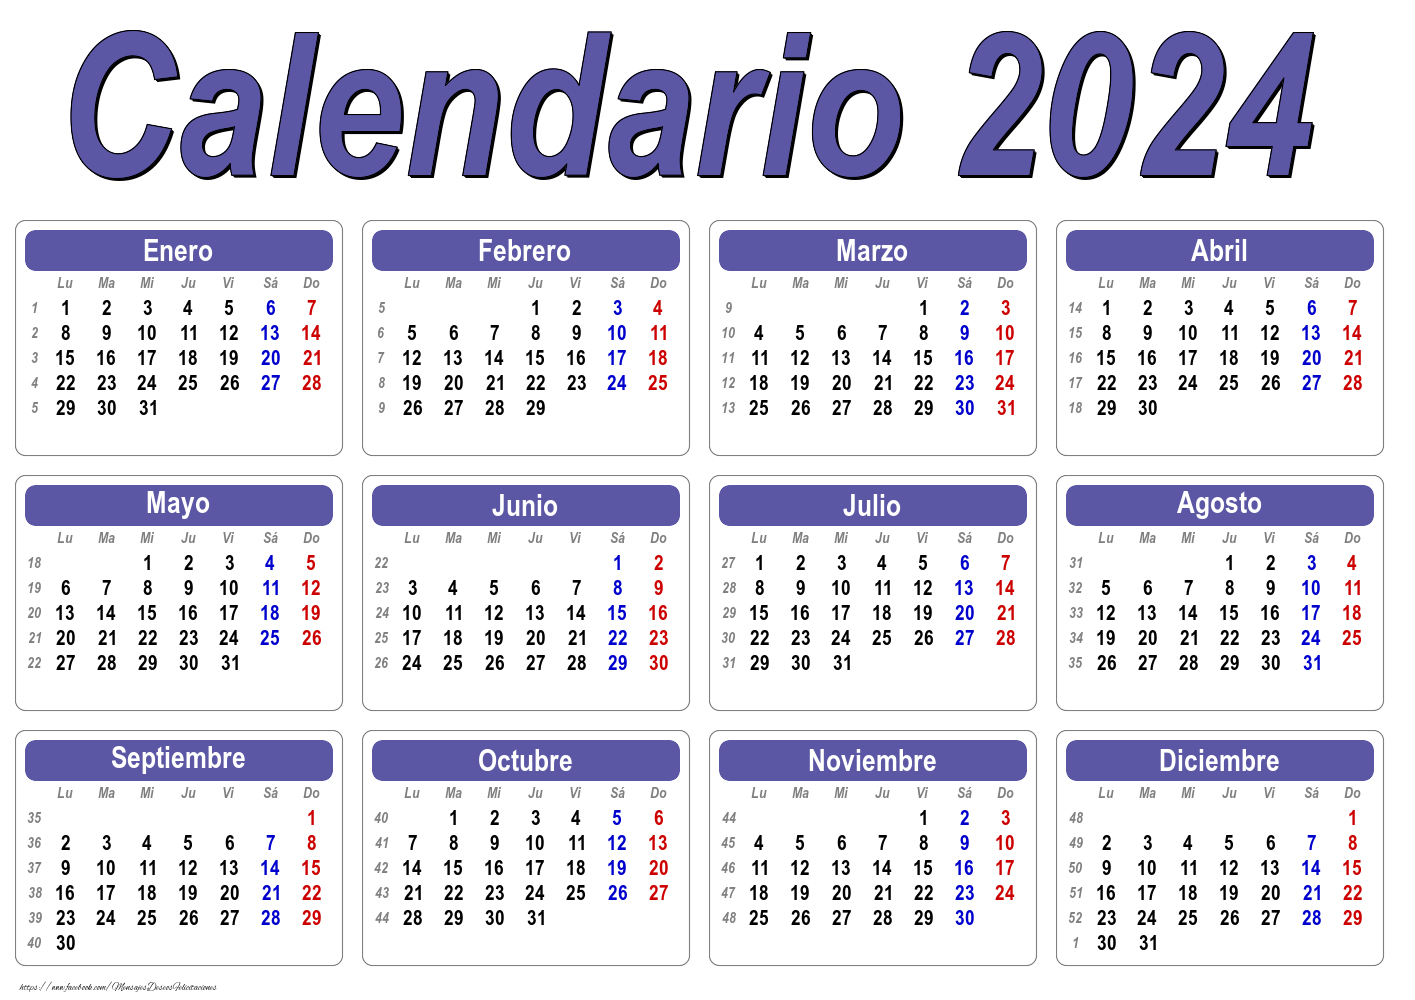 Calendarios Calendario 2024 - Clásico - Modelo 001